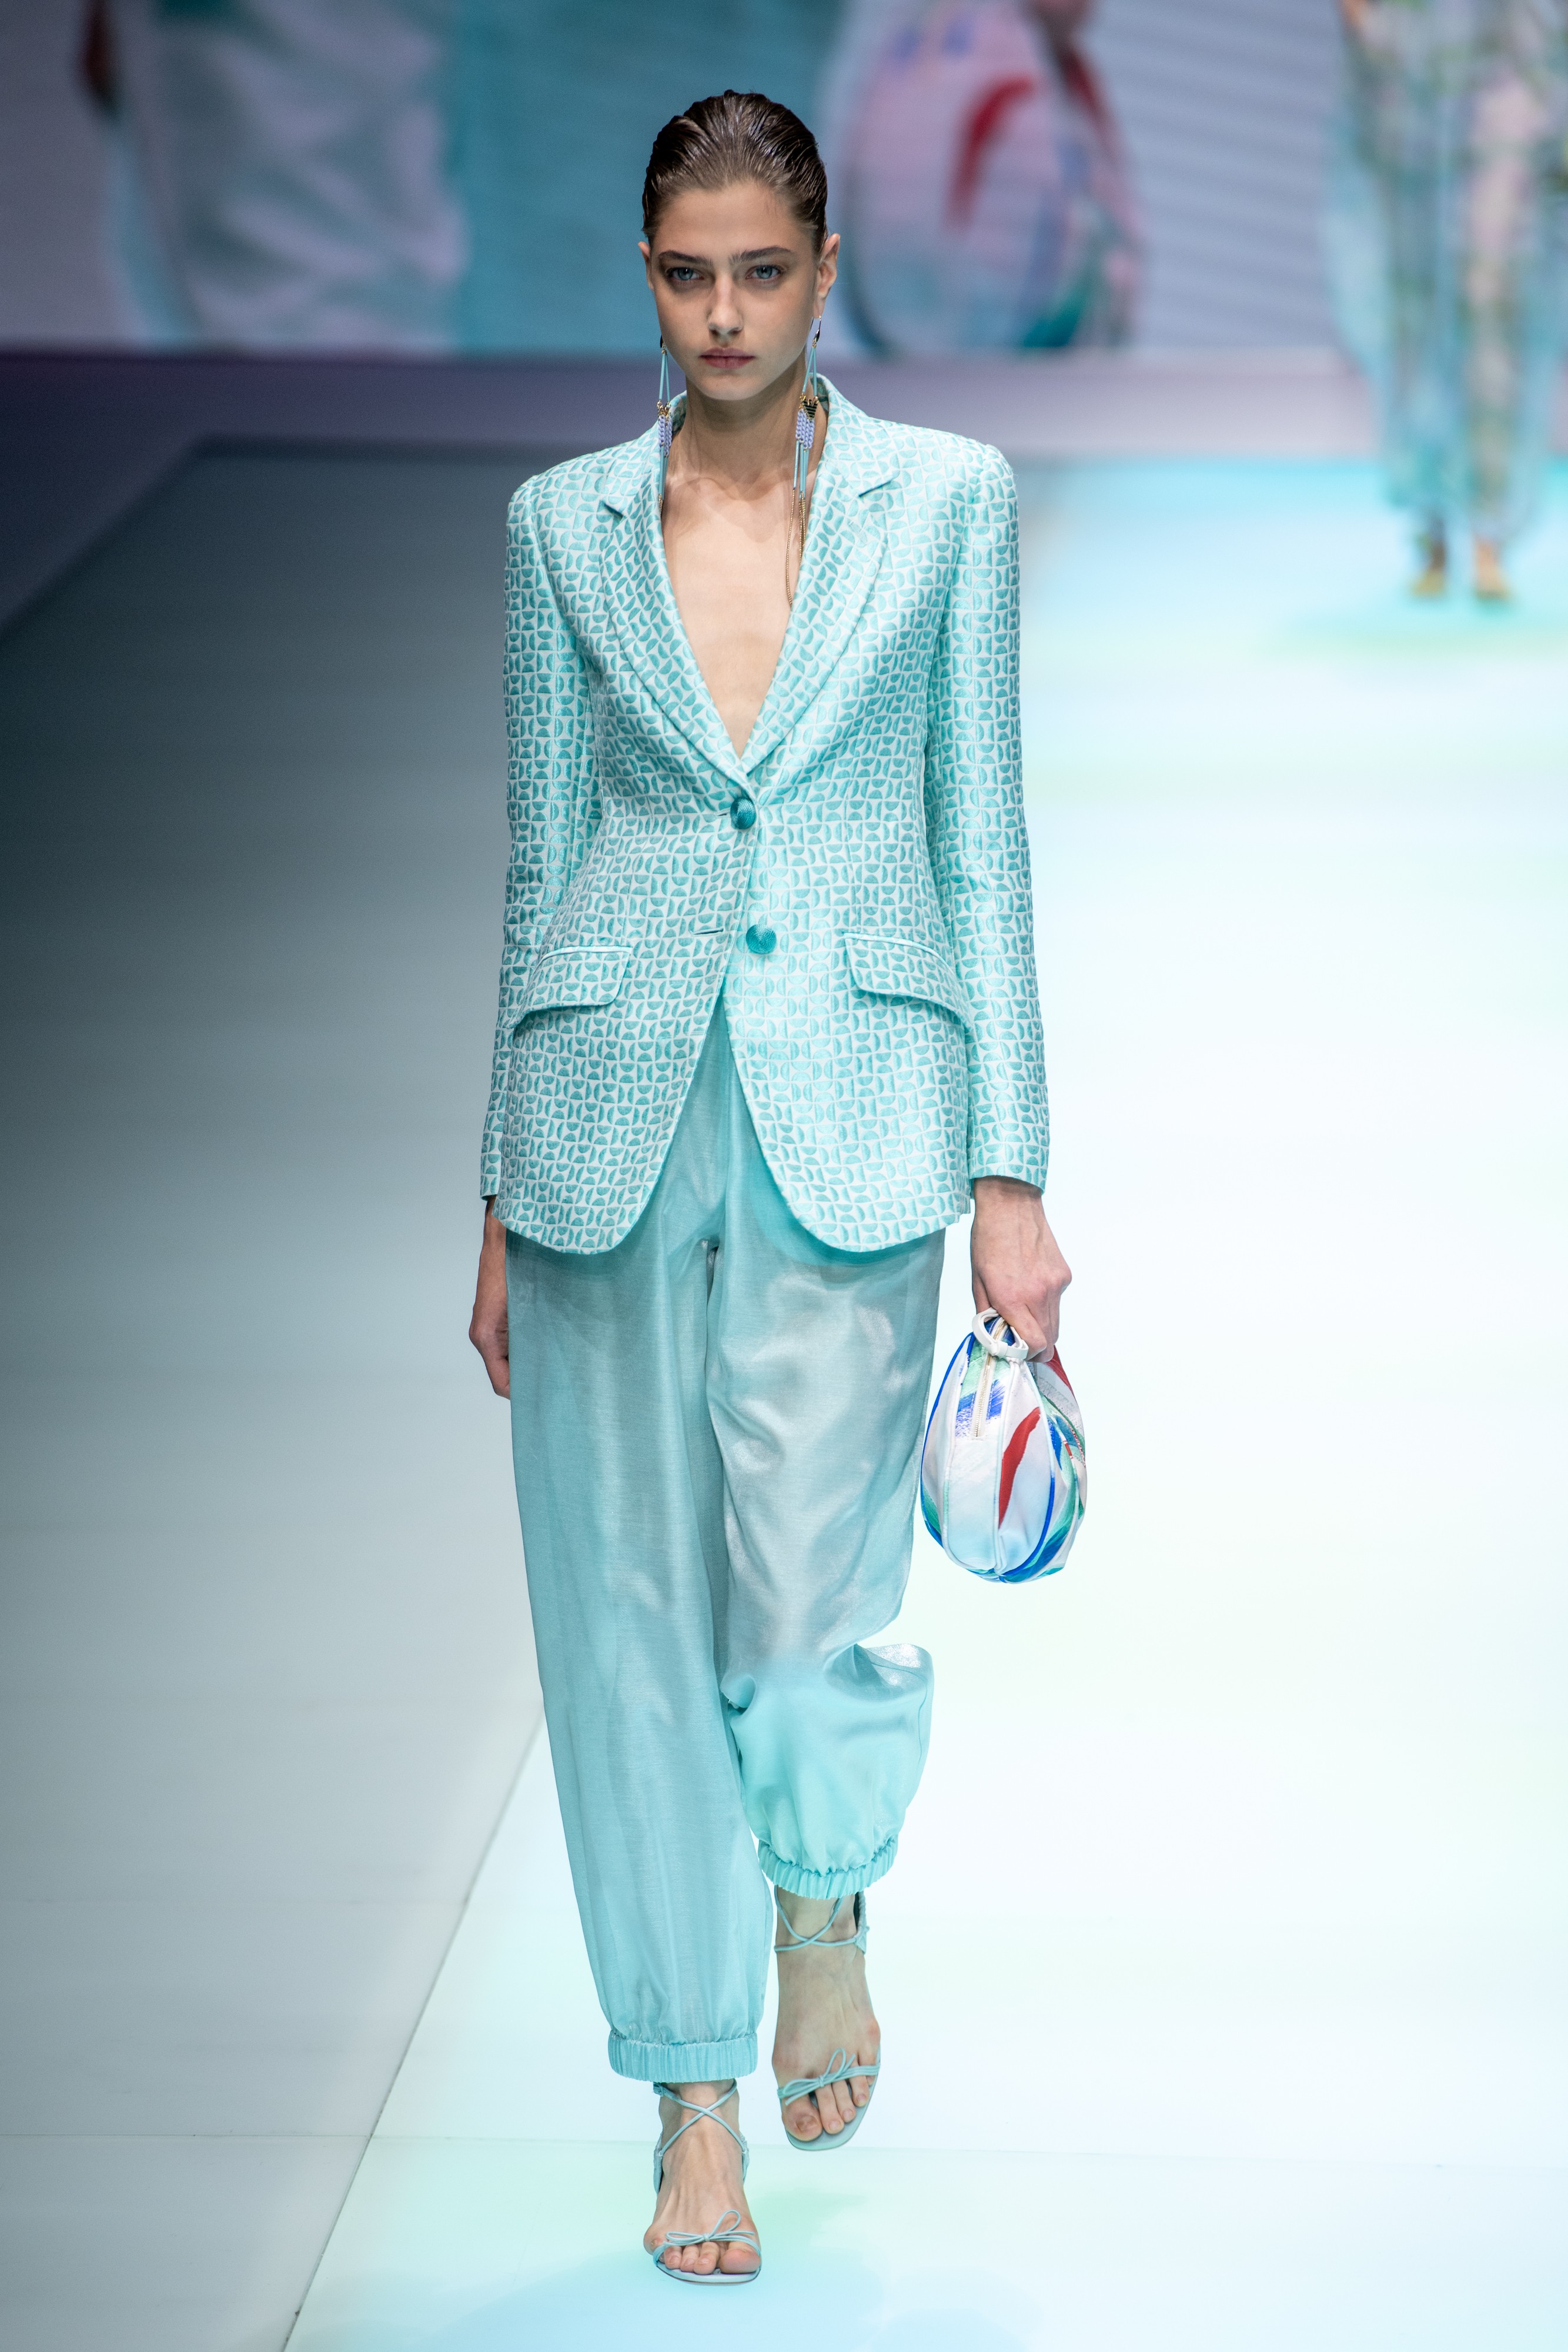 Semana de moda de Milão SS 22: Emporio Armani (Foto: Getty Images)